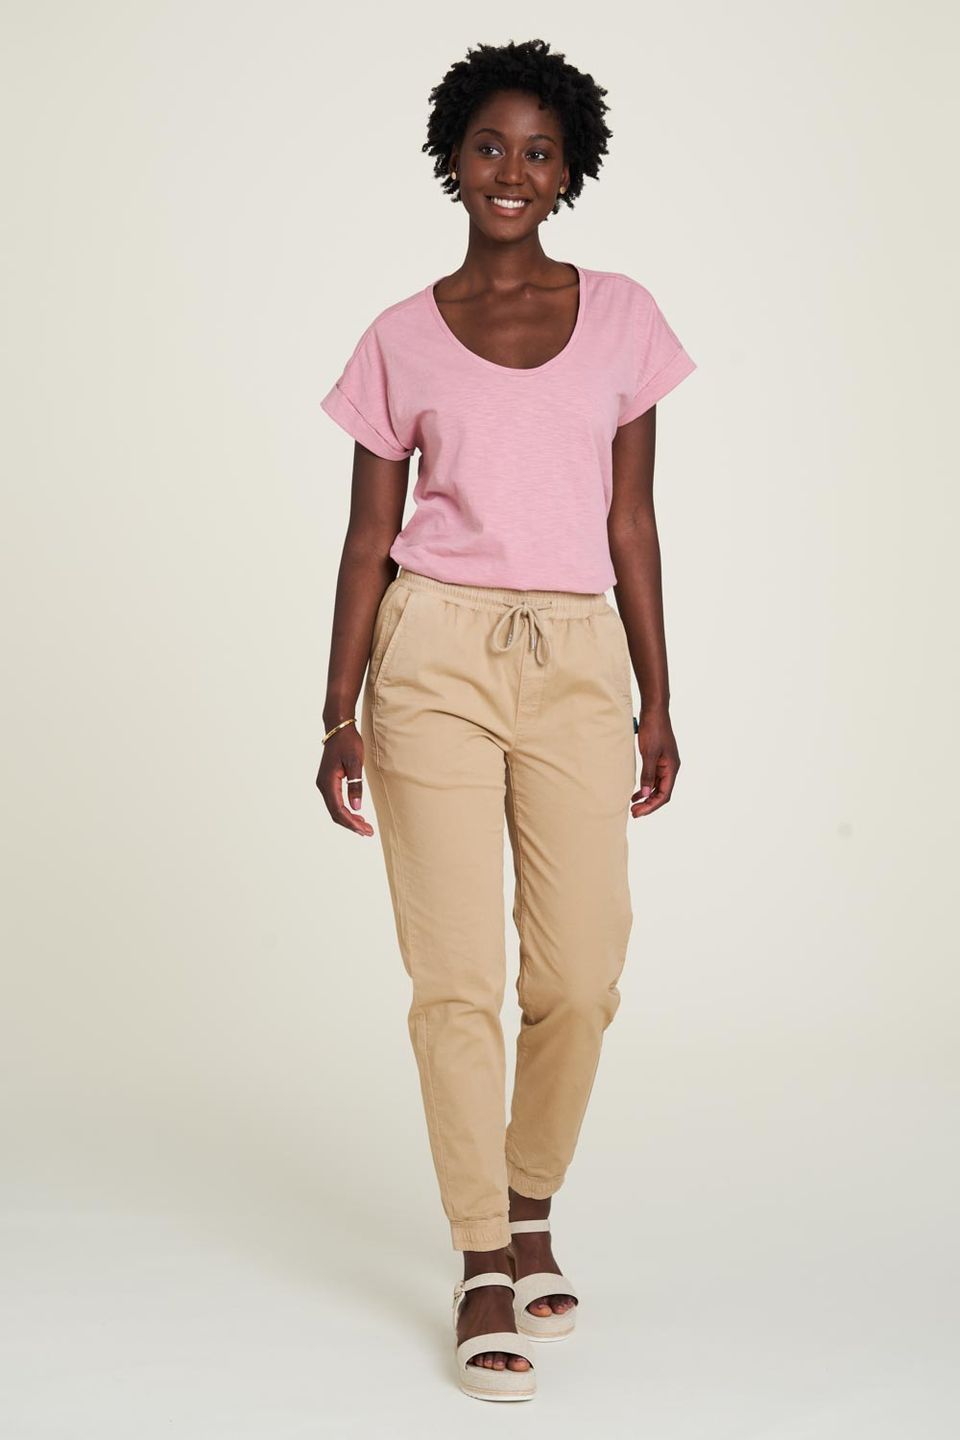 Shirt Jersey Locker vintage pink von Tranquillo